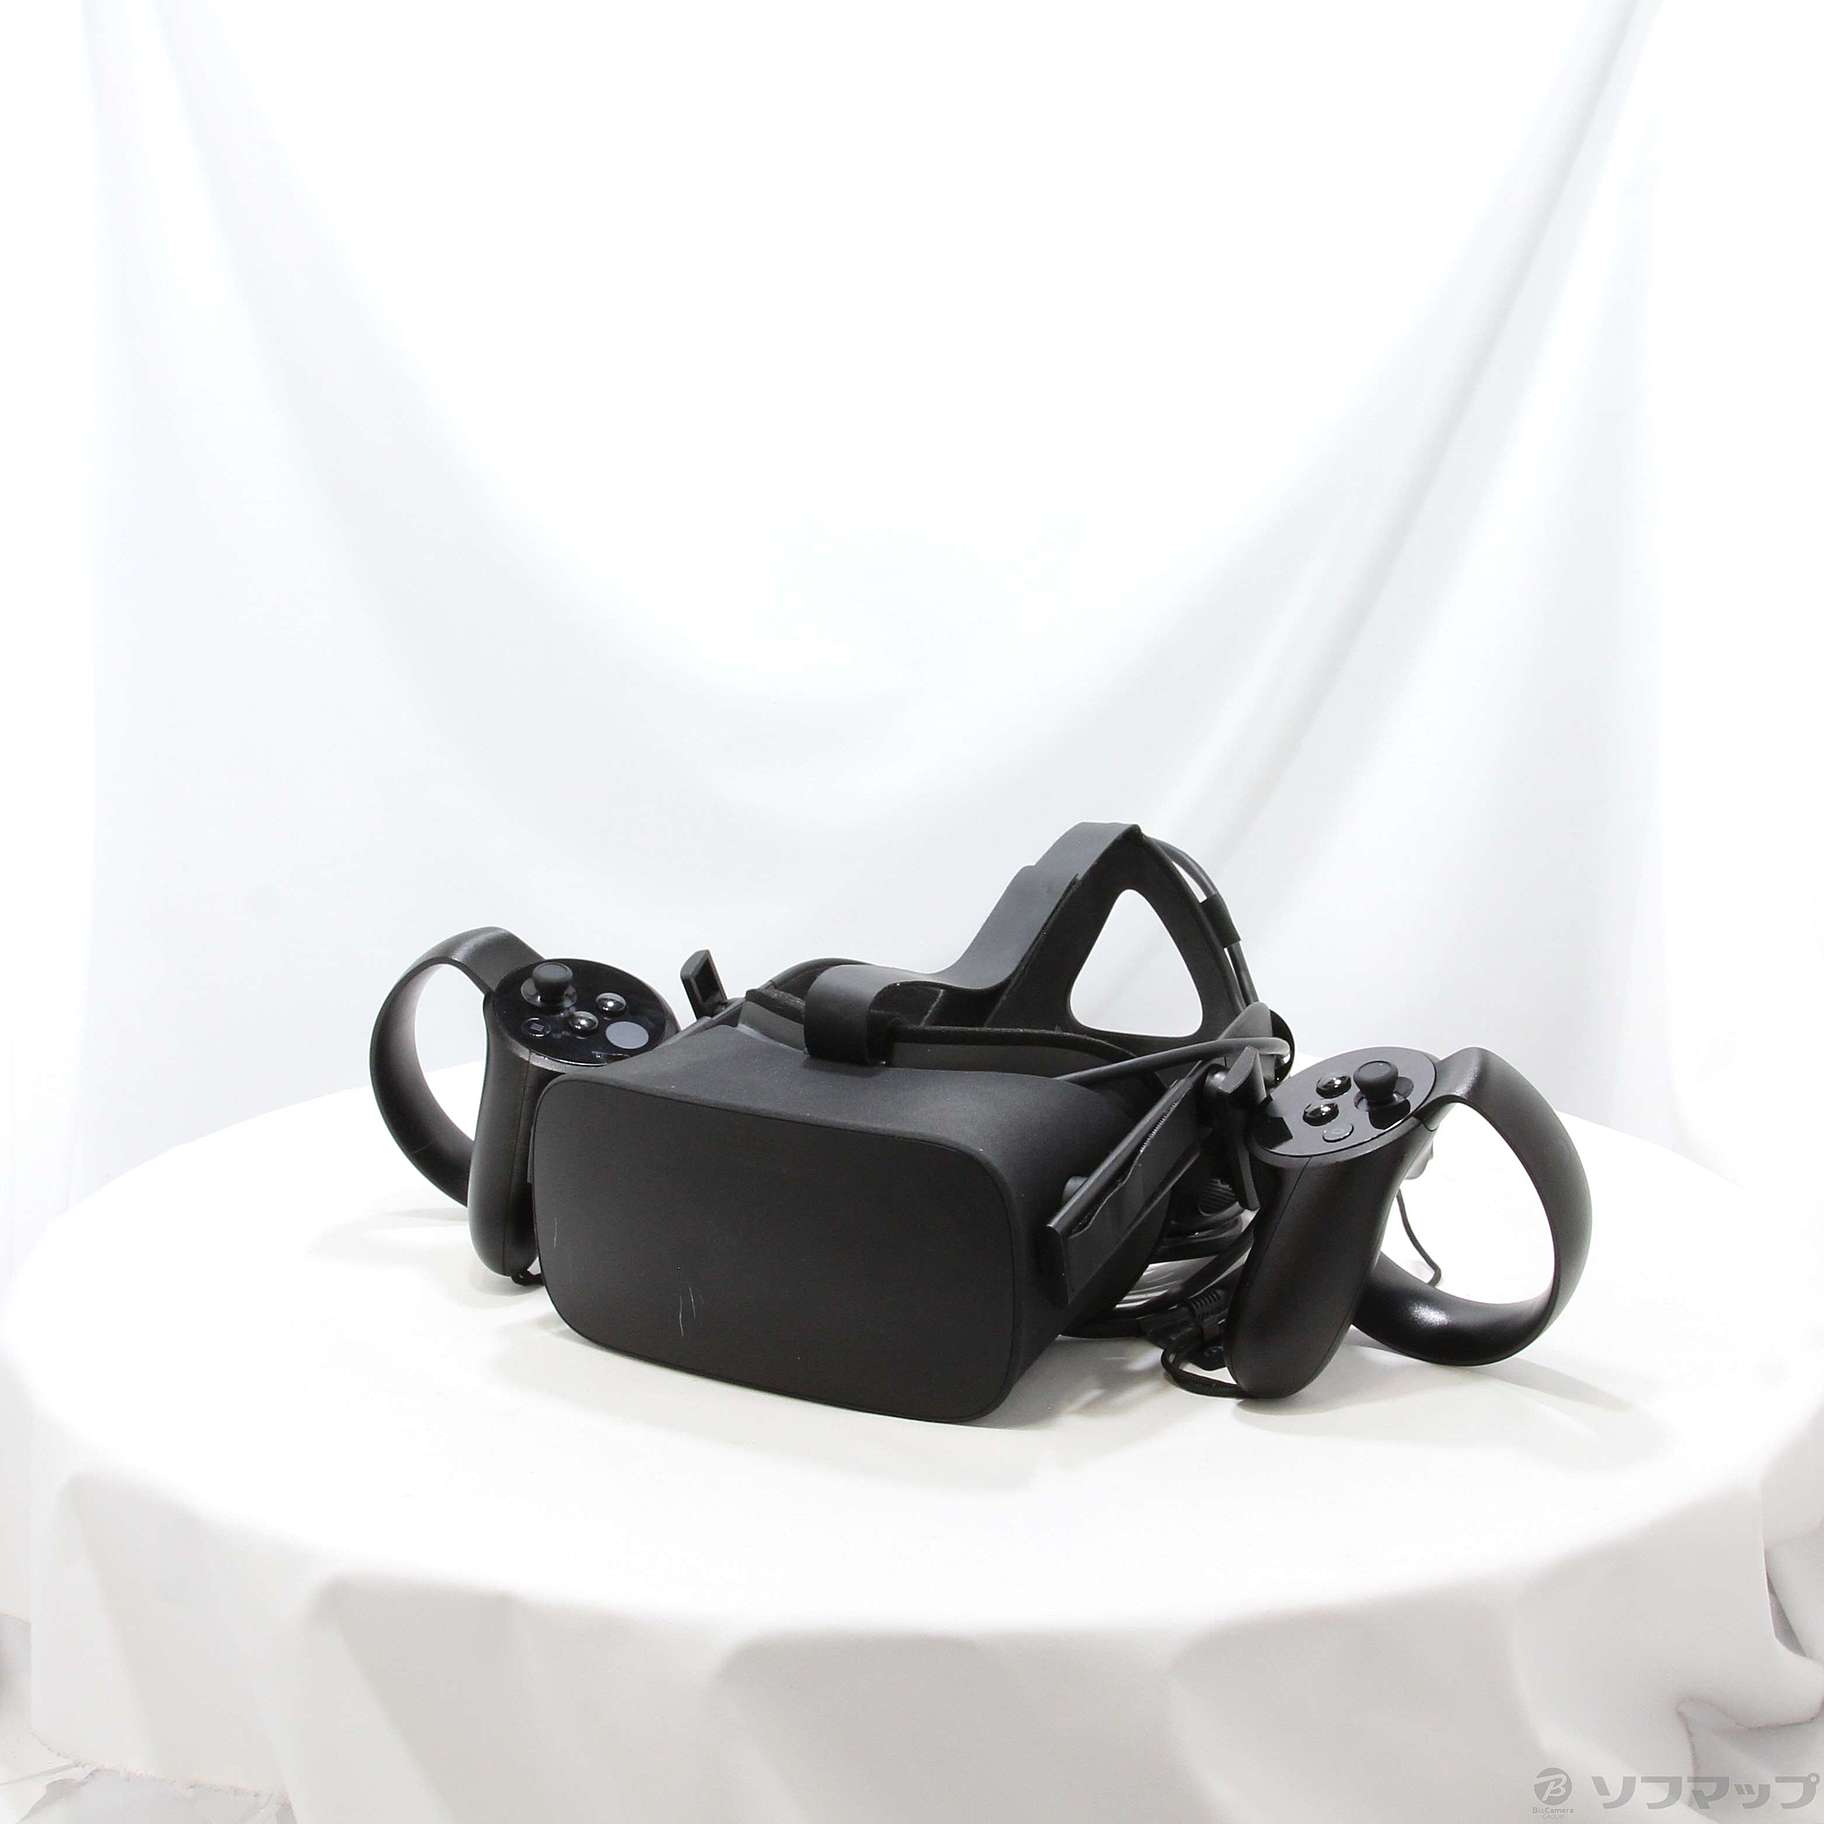 〔中古品〕 Oculus Rift CV1 (Oculus Touch 同梱版)